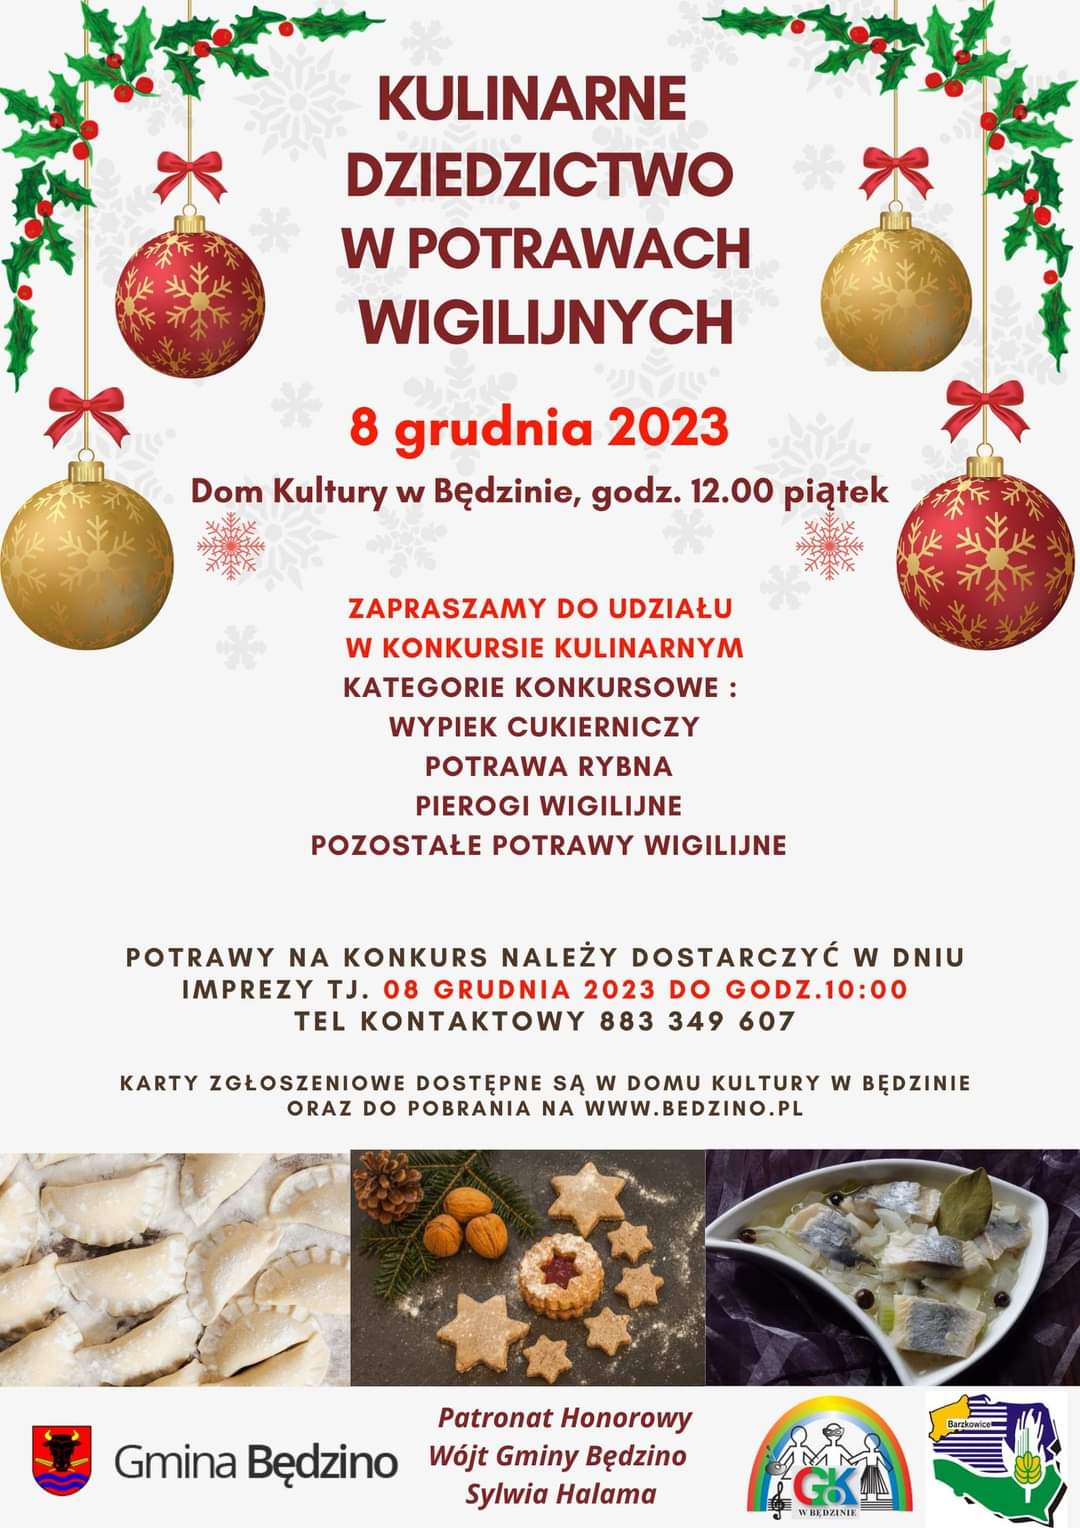 Plakat z zaproszeniem na kulinarne dziedzictwo w potrawach wiglijnych 8 grudnia 2023 w Będzinie